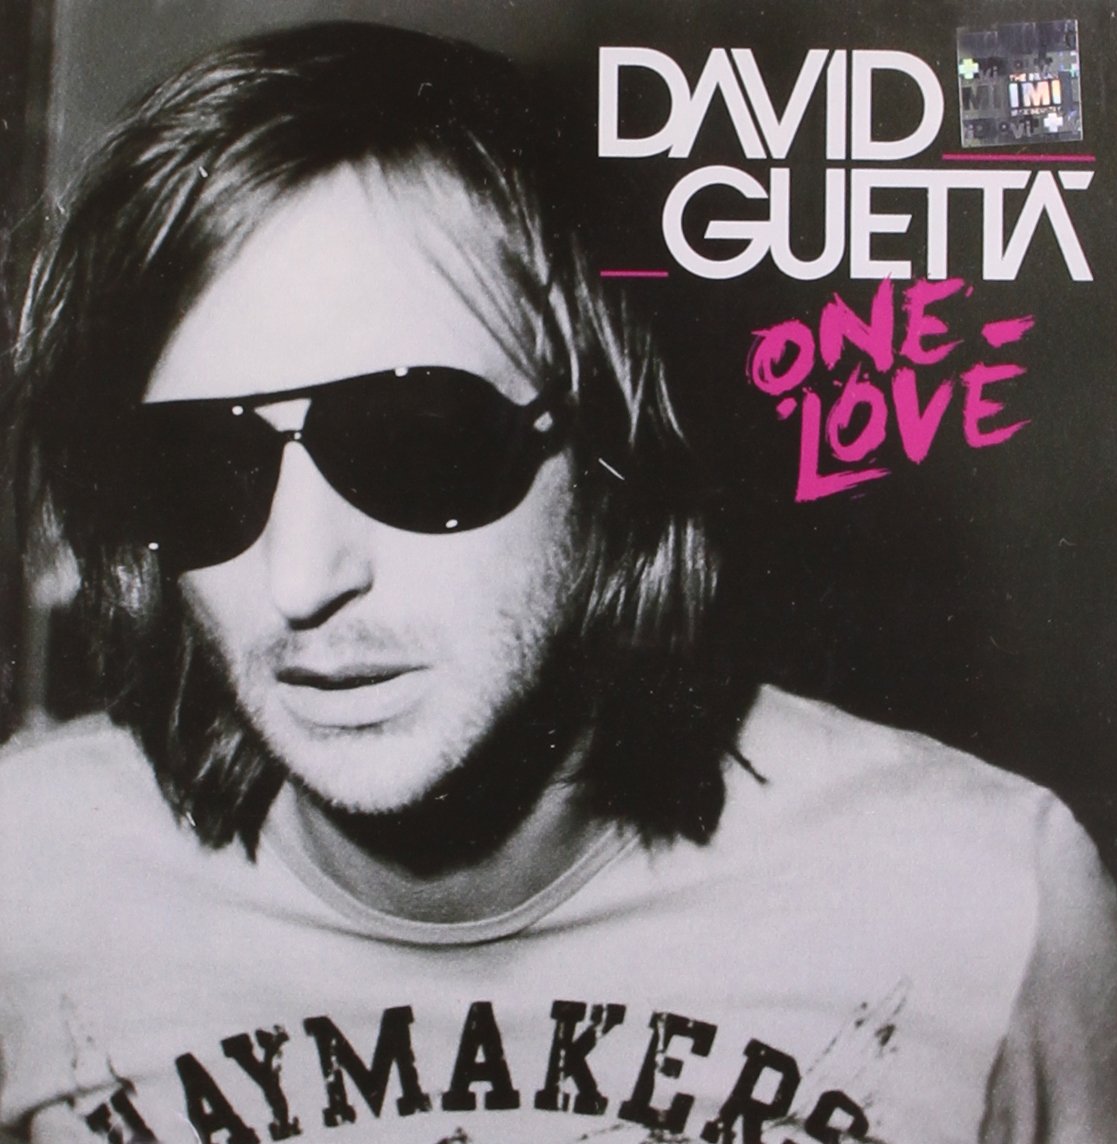 Audio Cd David Guetta - One Love NUOVO SIGILLATO, EDIZIONE DEL 23/01/2017 SUBITO DISPONIBILE